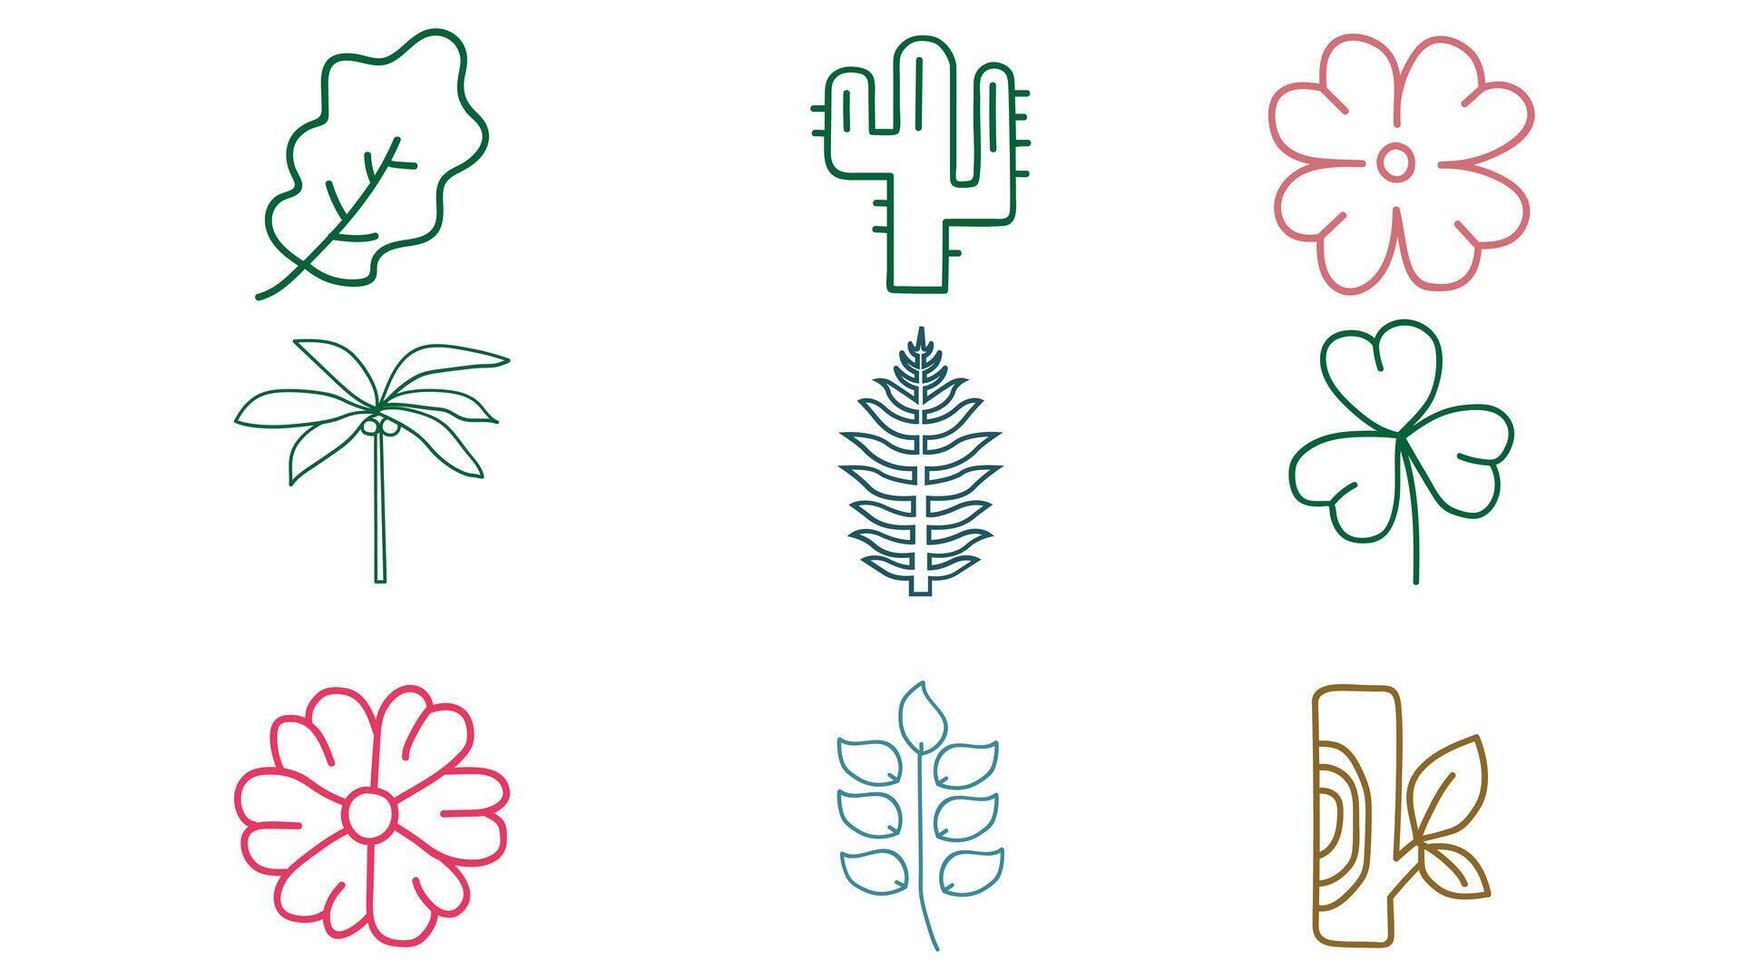 natural folhas e árvores Projeto vetor ícones isolado ilustração